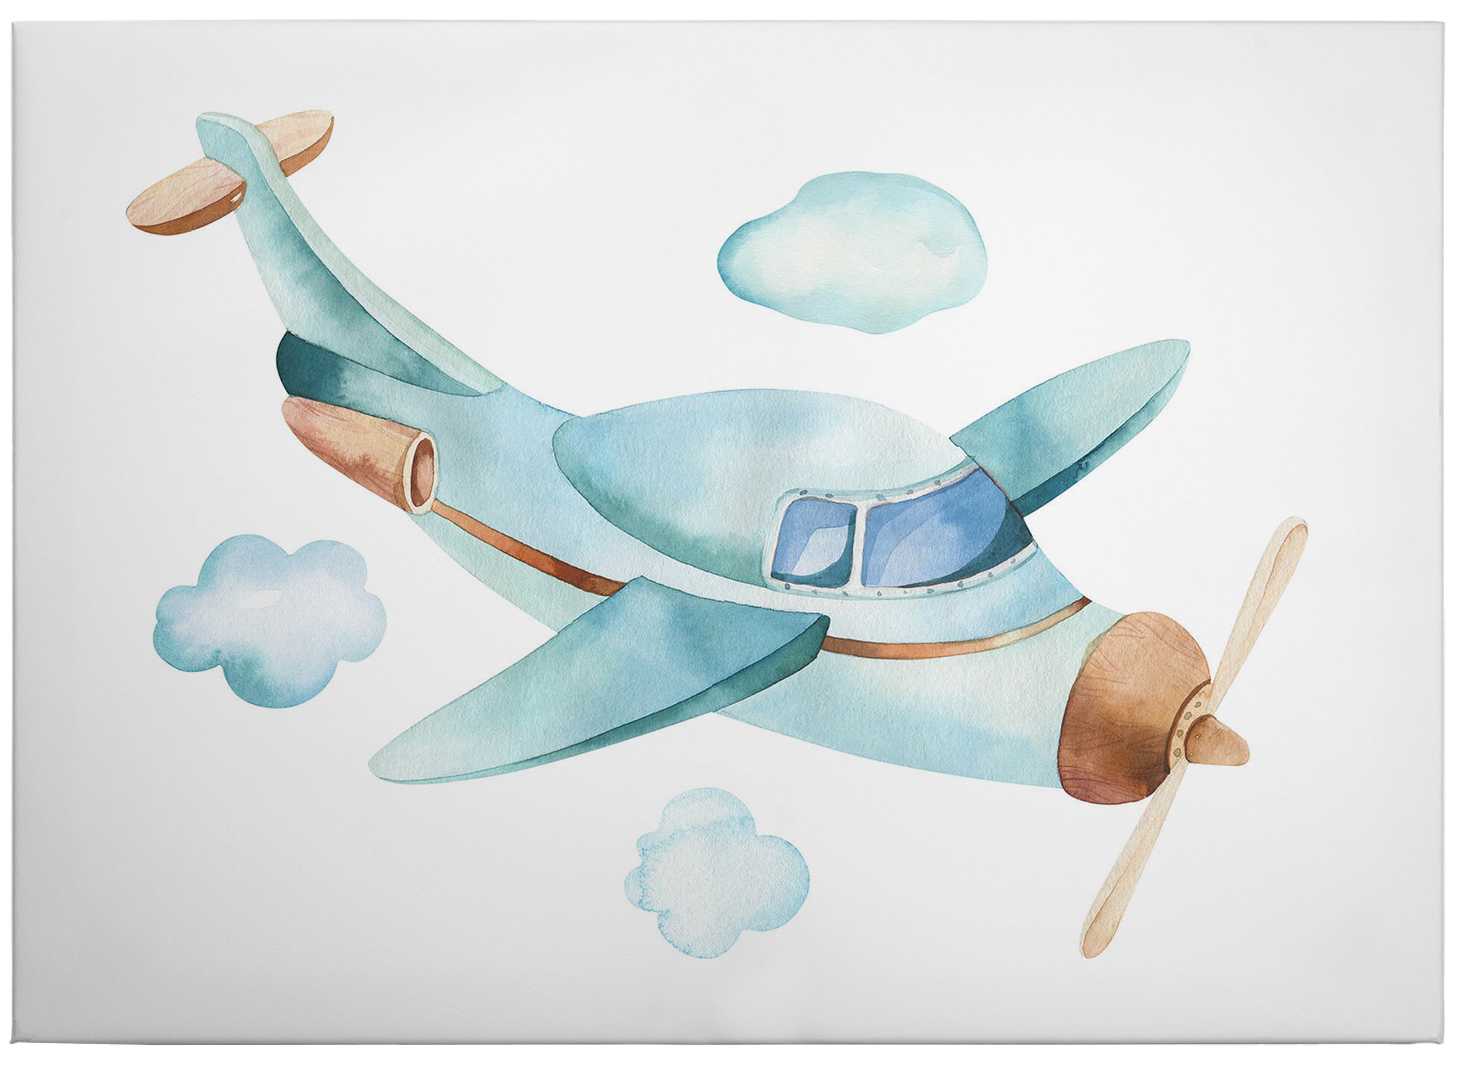             Tableau toile Avion Aquarelle Nuages Ciel de Kvilis - 0,70 m x 0,50 m
        